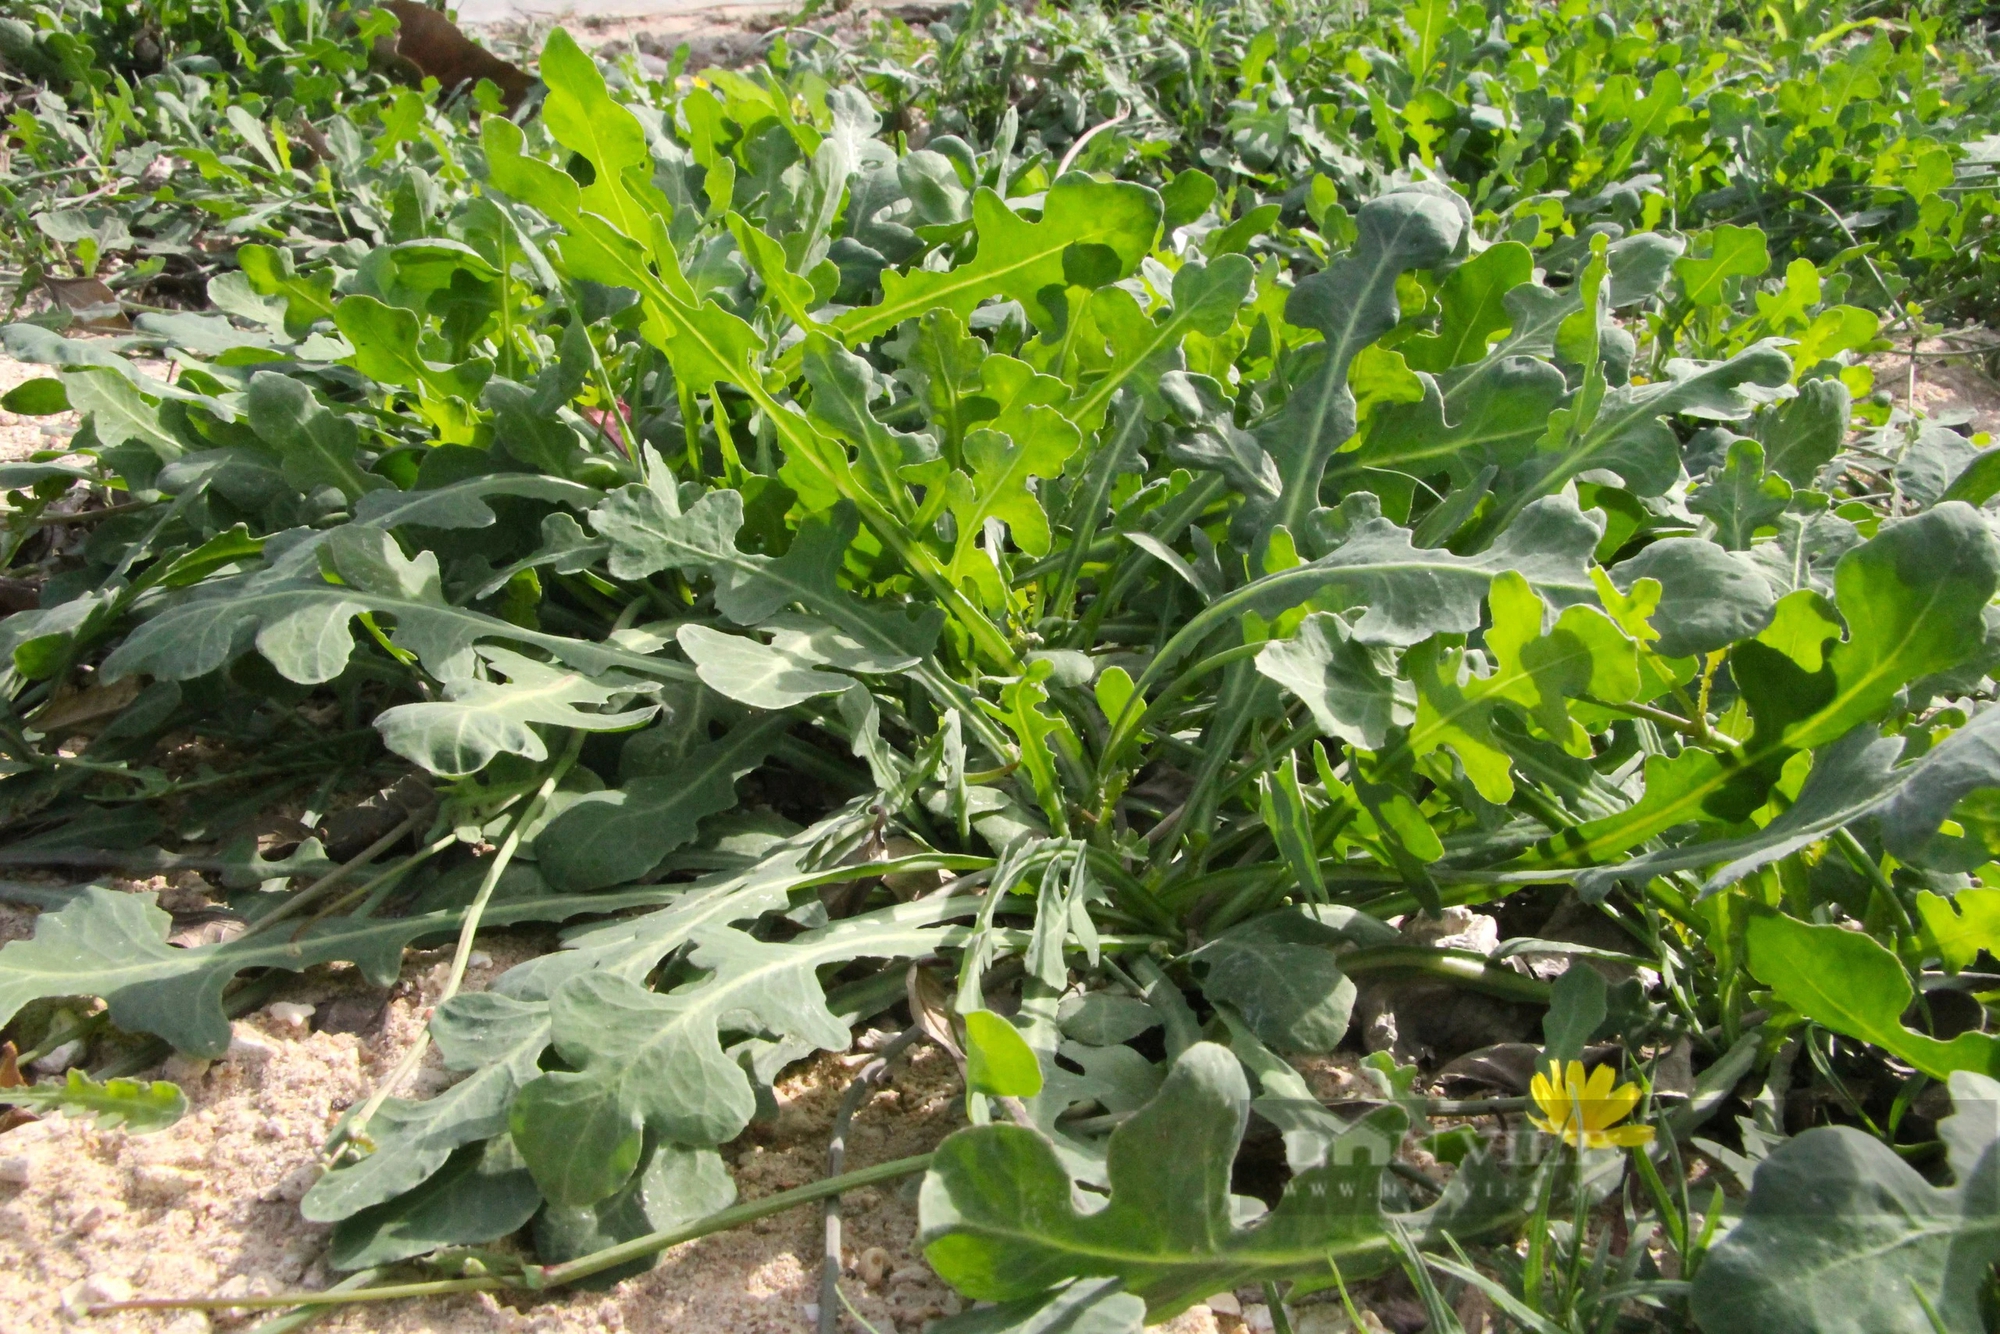 Loài rau dại mọc hoang ở đồi cát Ninh Thuận nay trở thành đặc sản, ăn ngon lại có tác dụng như thần dược- Ảnh 3.